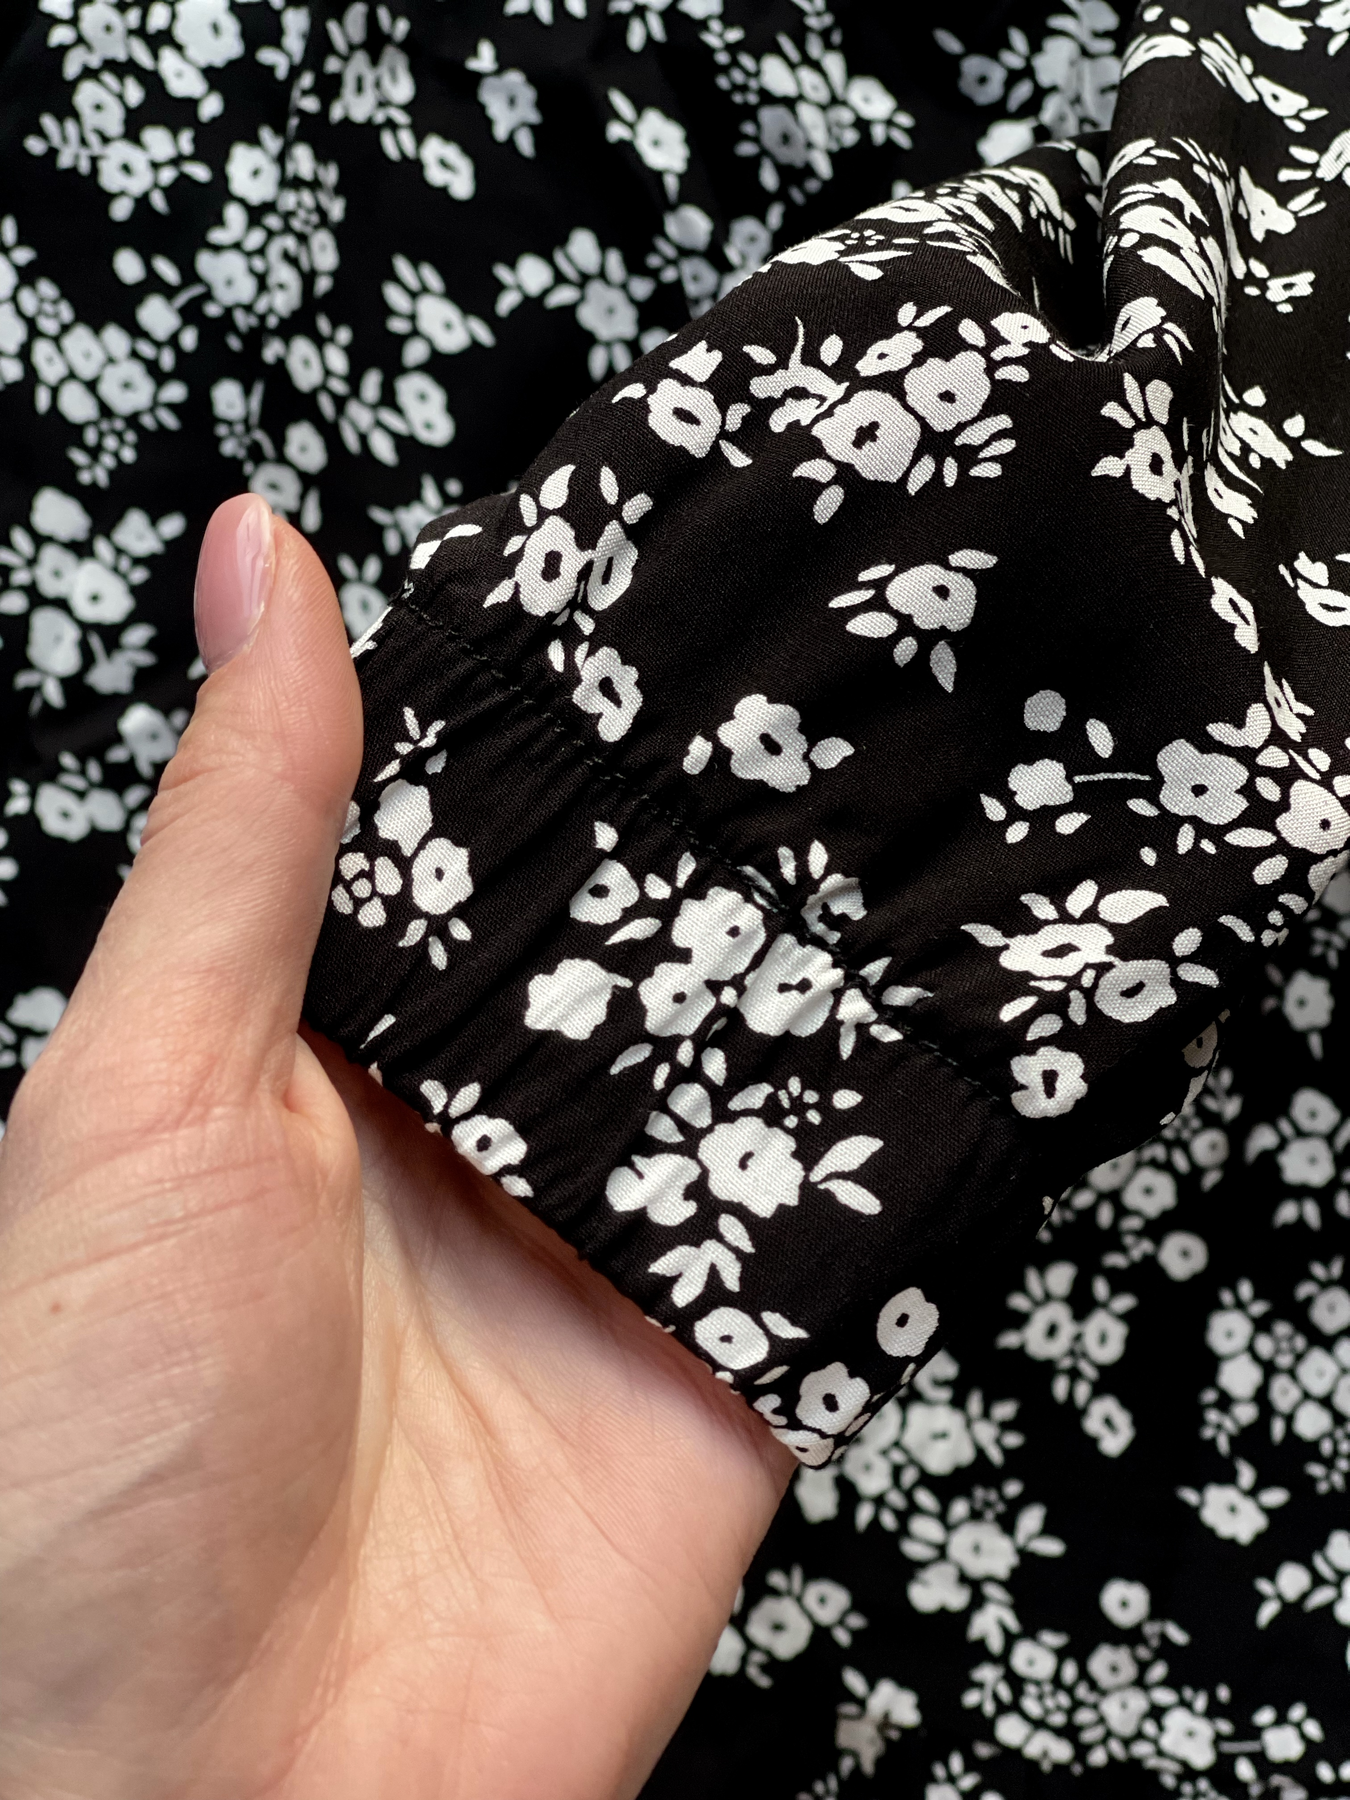 Купити Довга сукня в квіточку чорну з довгим рукавом Merlini Форі 700001202, розмір 42-44 (S-M) в інтернет-магазині